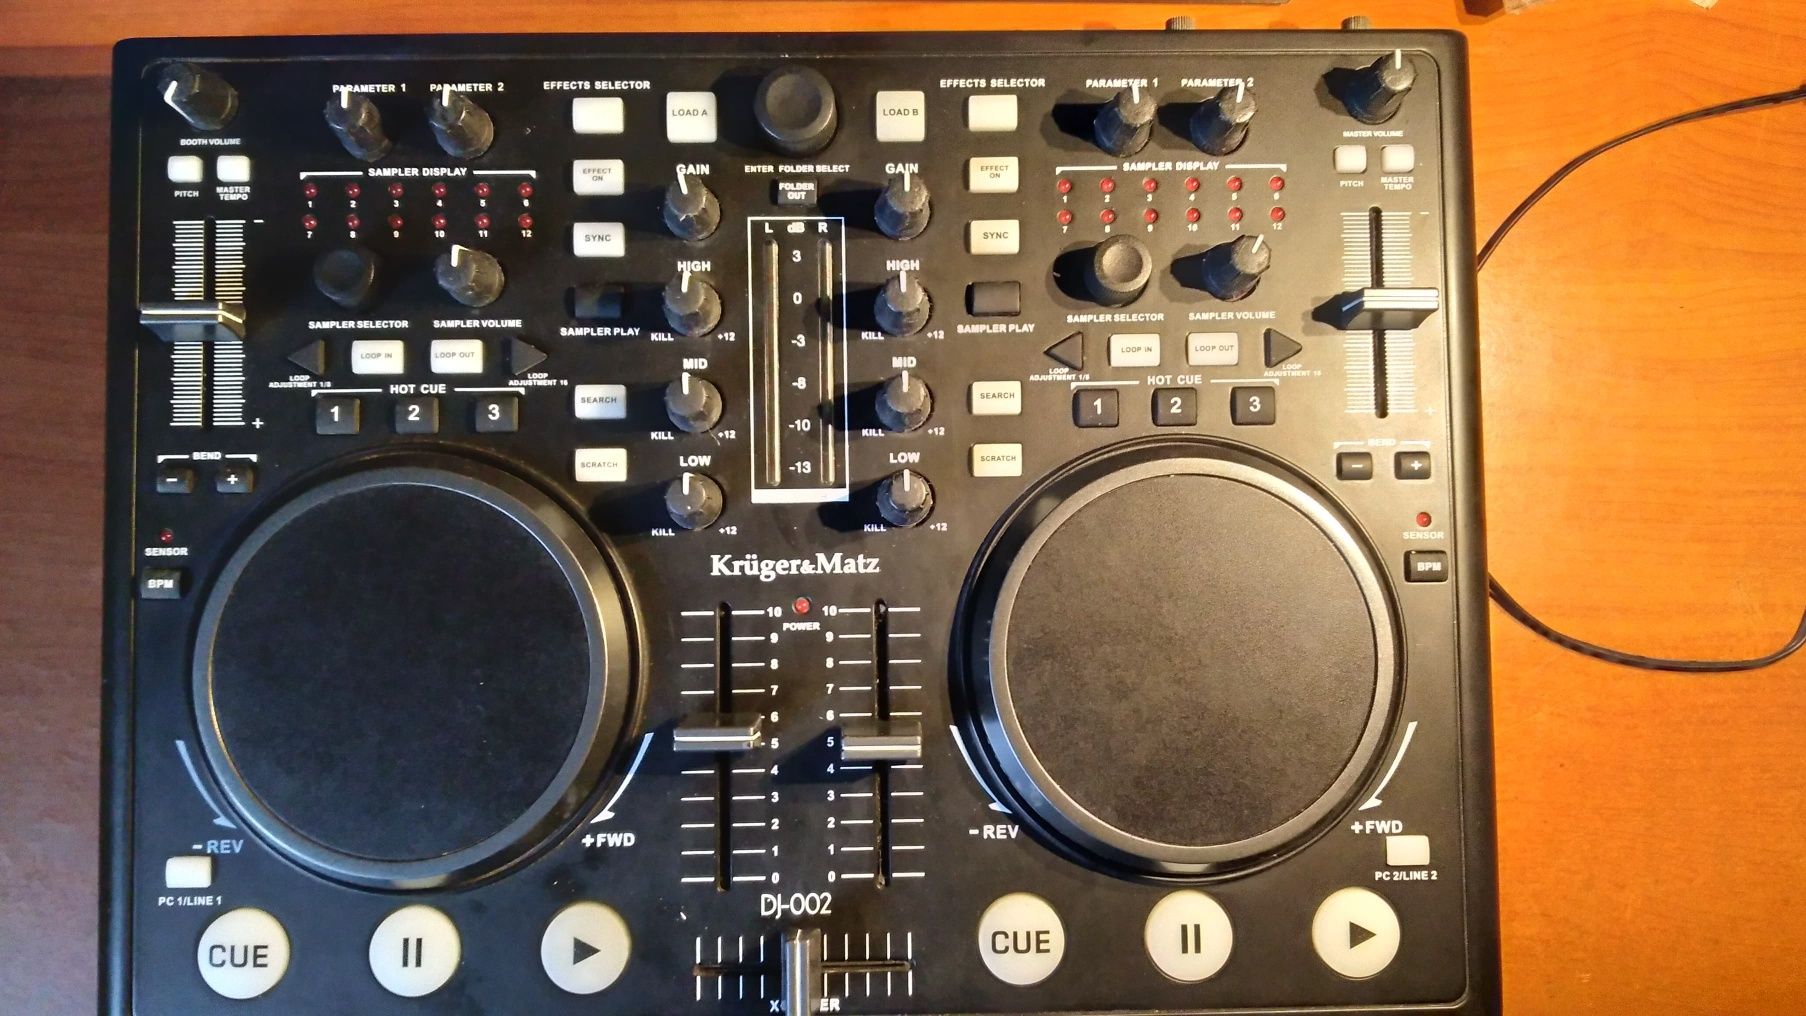 Kontroler DJ kruger&matz dj-002